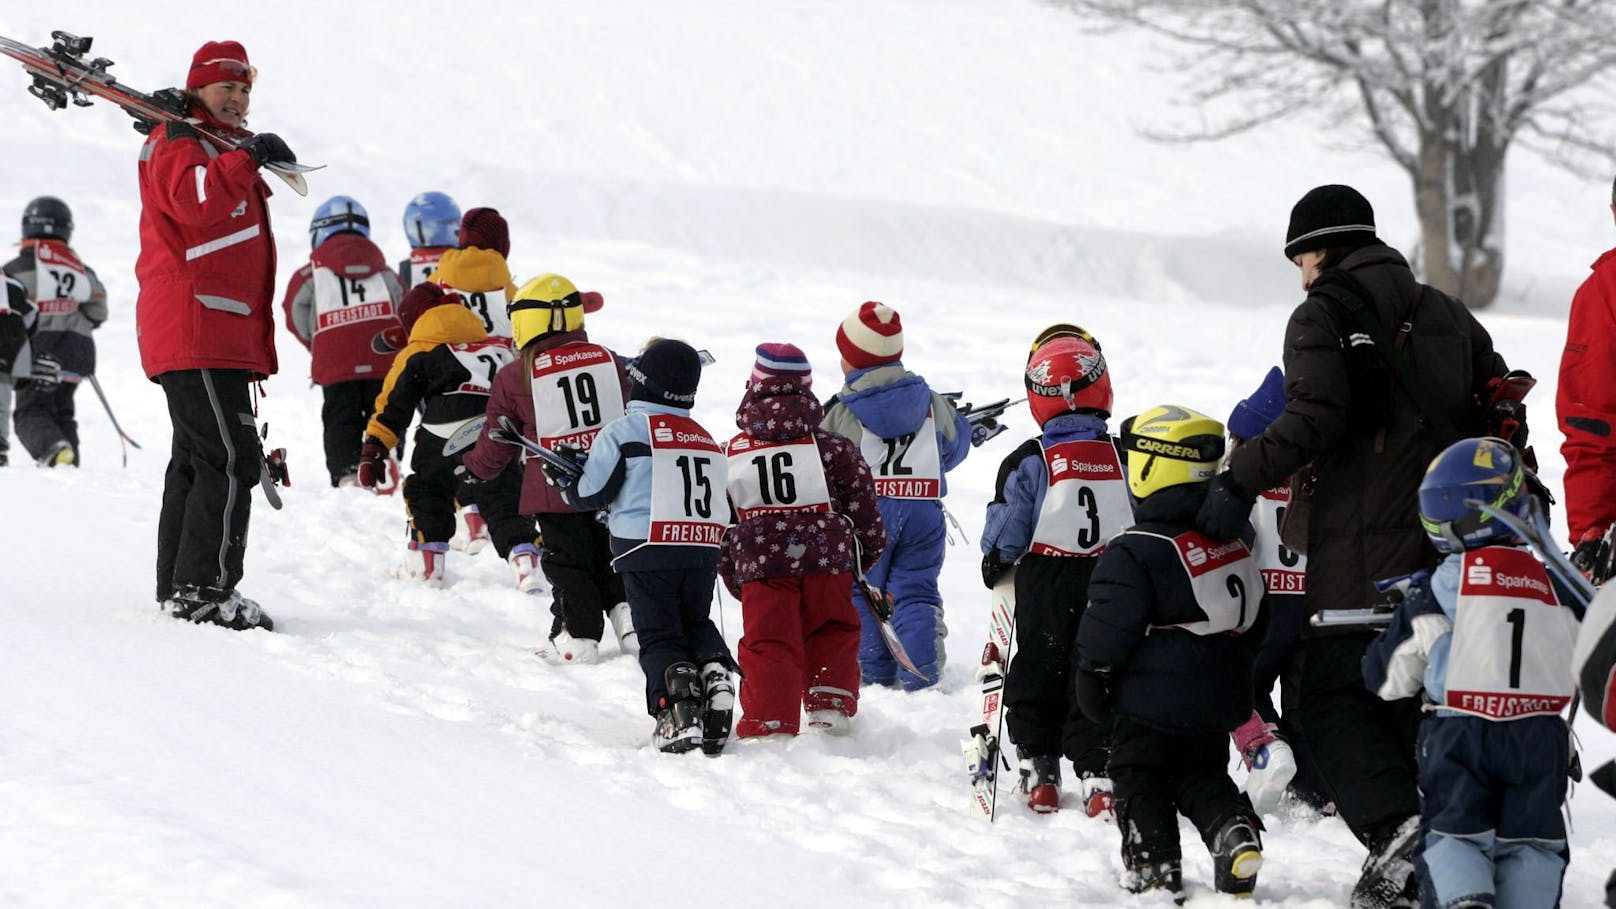 Eltern wollen Skikurse nicht - ein Grund überrascht